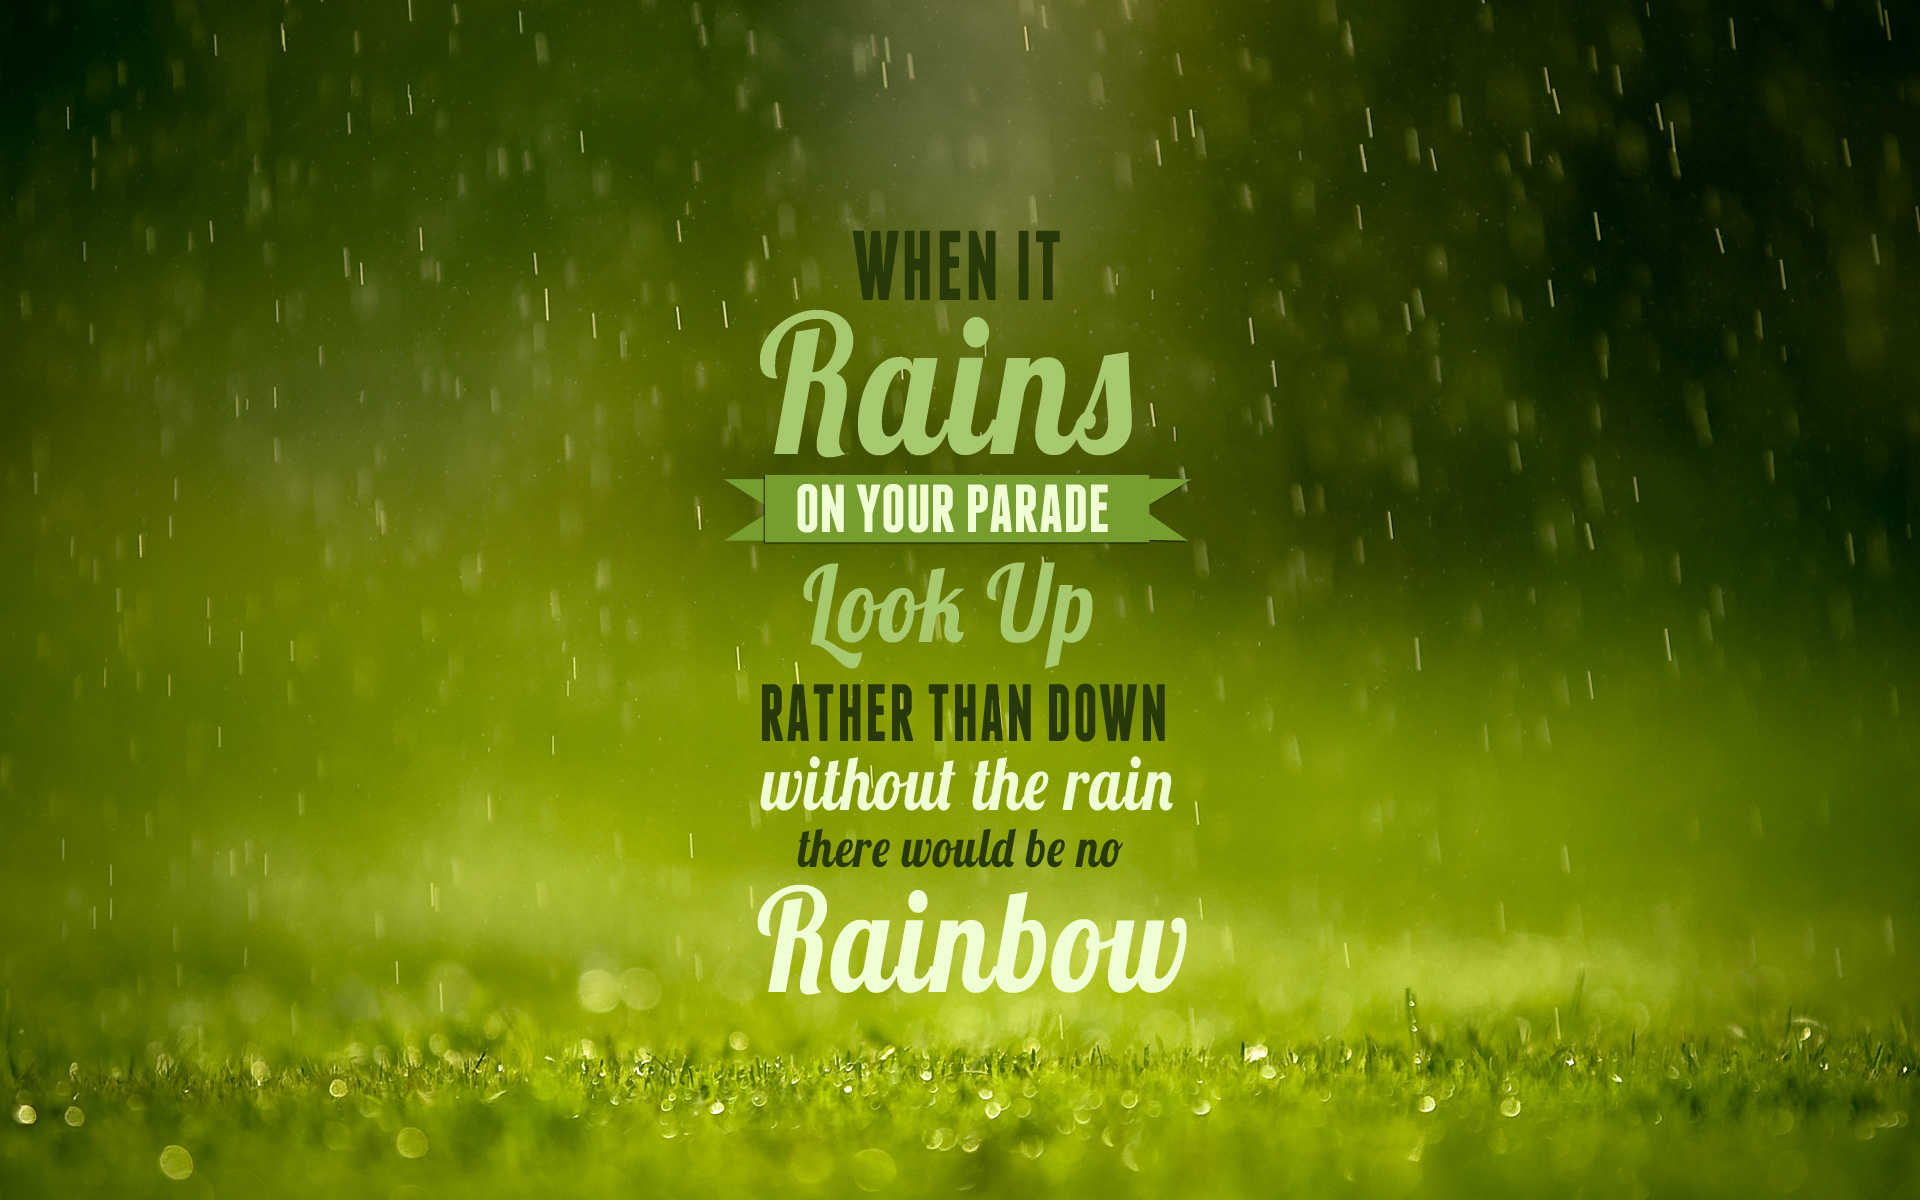 Rain Blessing Quotes. QuotesGram